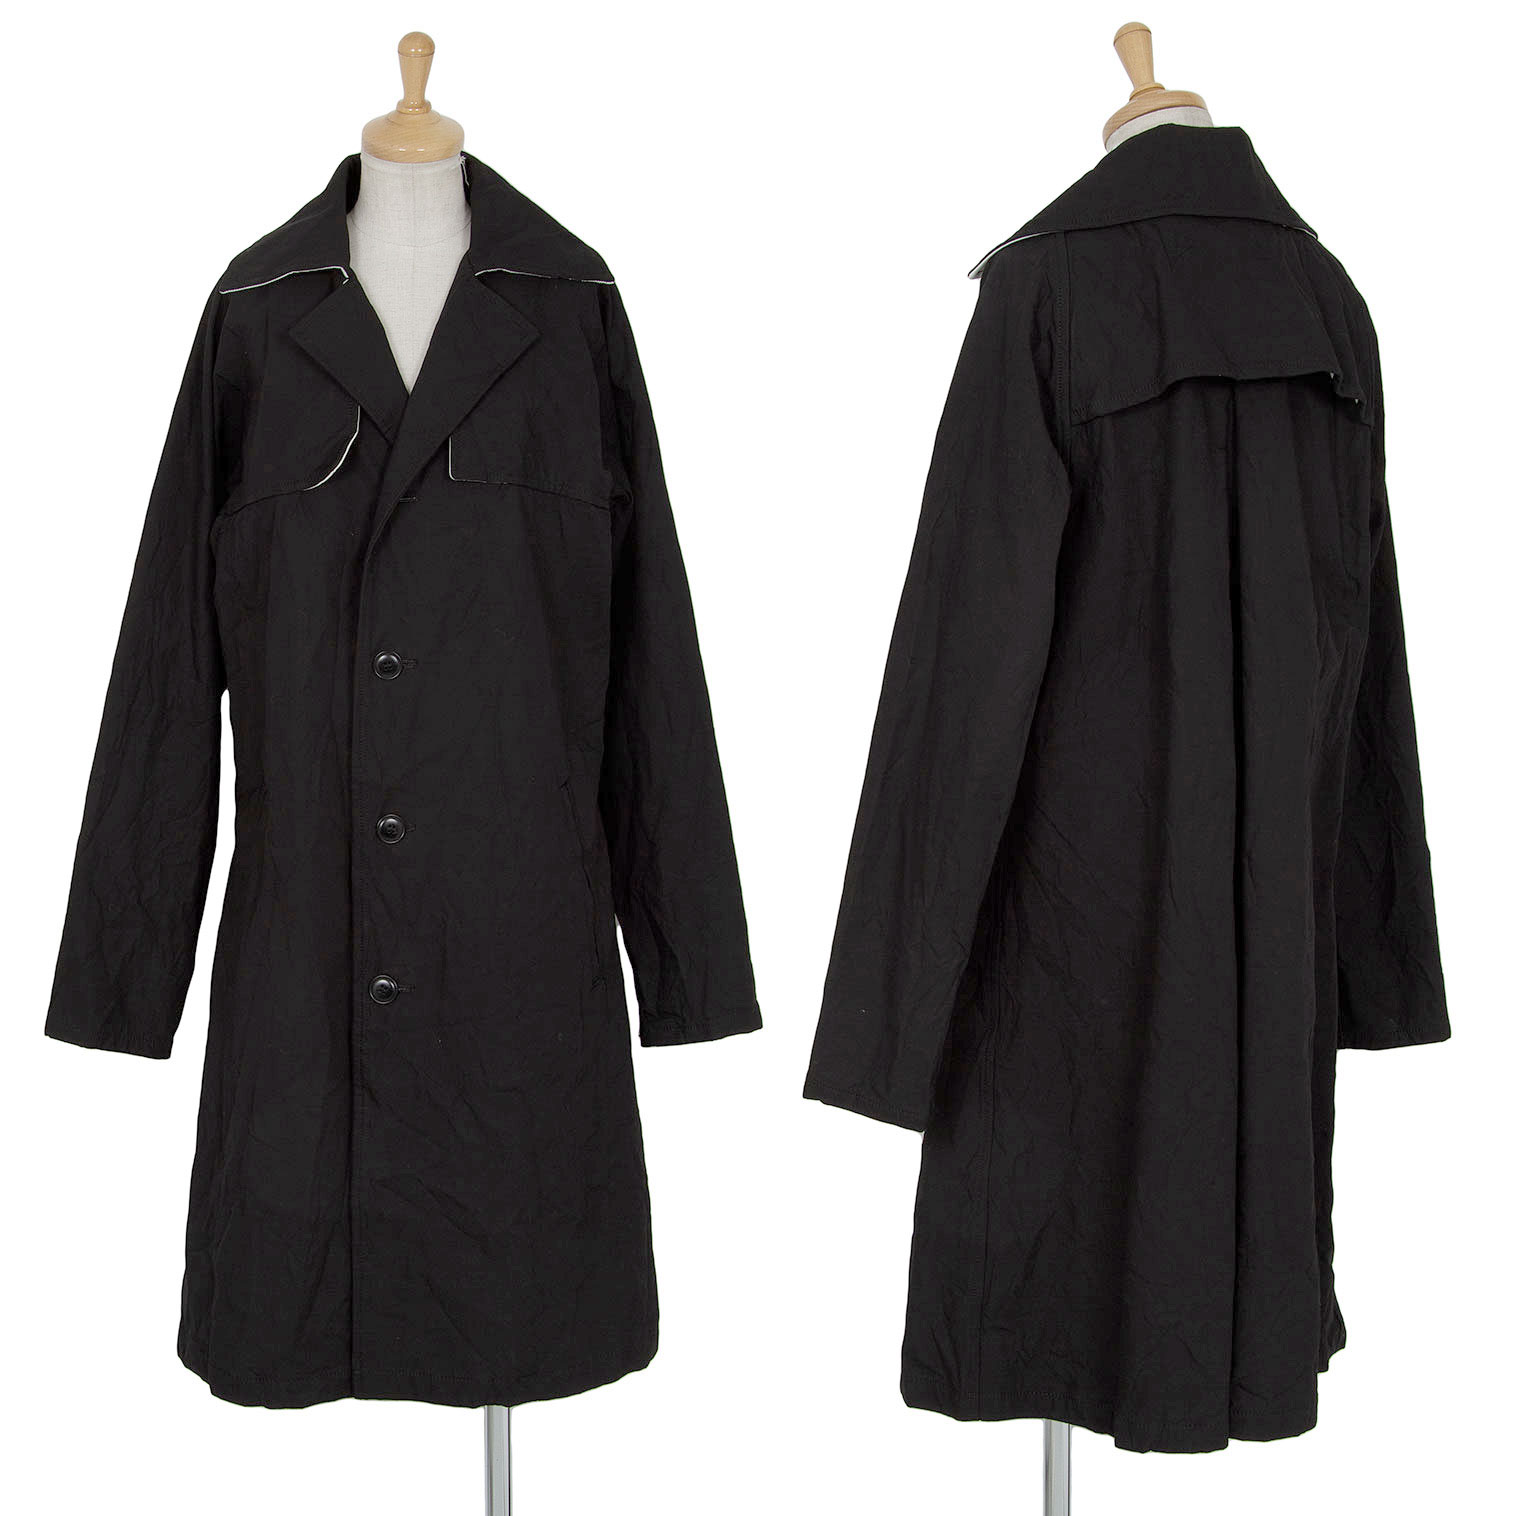 Y's Cotton Wrinkled Coat Black 2 | PLAYFUL